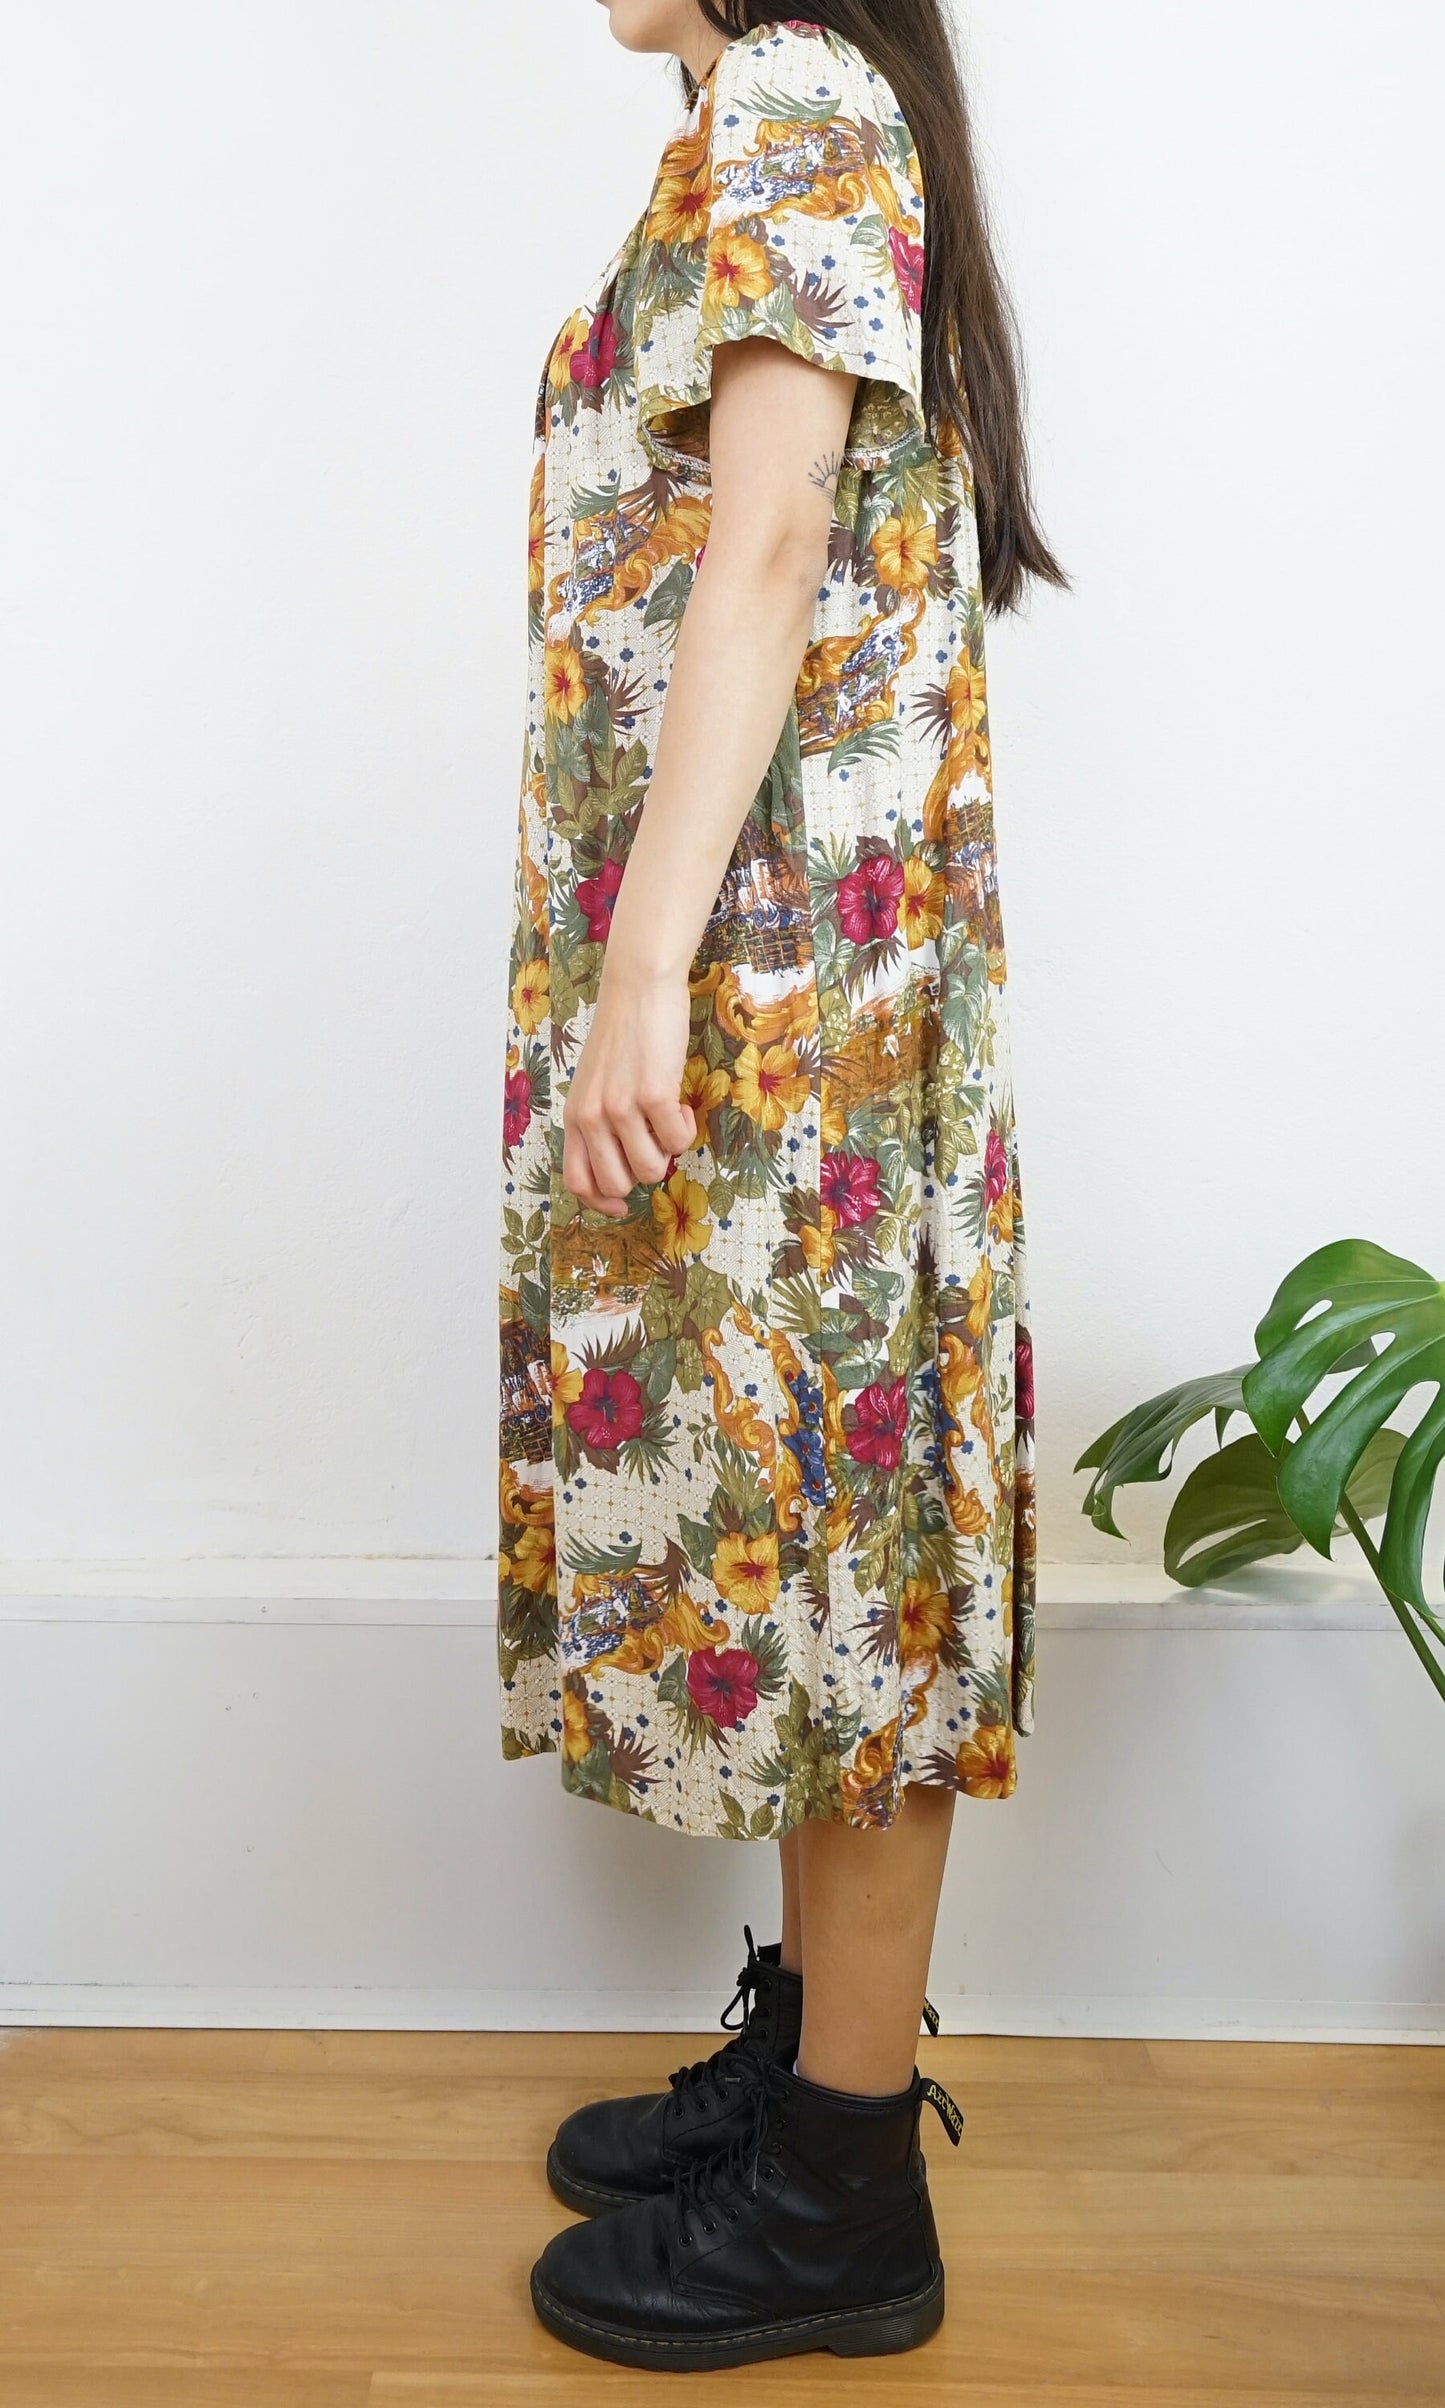 Vintage floral Dress size M-L v neck